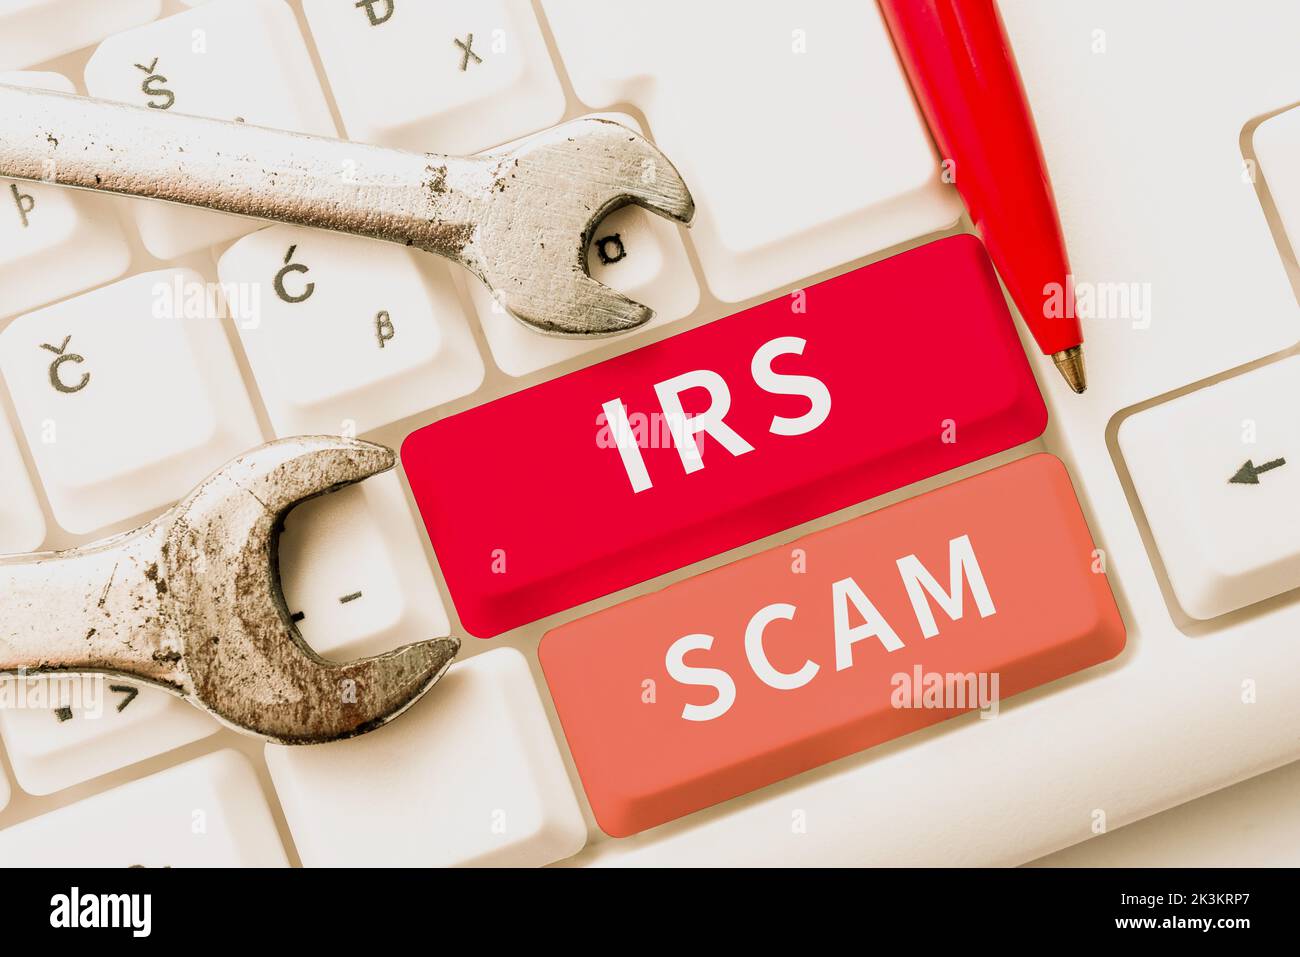 Textunterschrift mit IRS Scam. Unternehmensüberblick zielte auf Steuerzahler, indem er vorgab, Internal Revenue Service zu sein Stockfoto